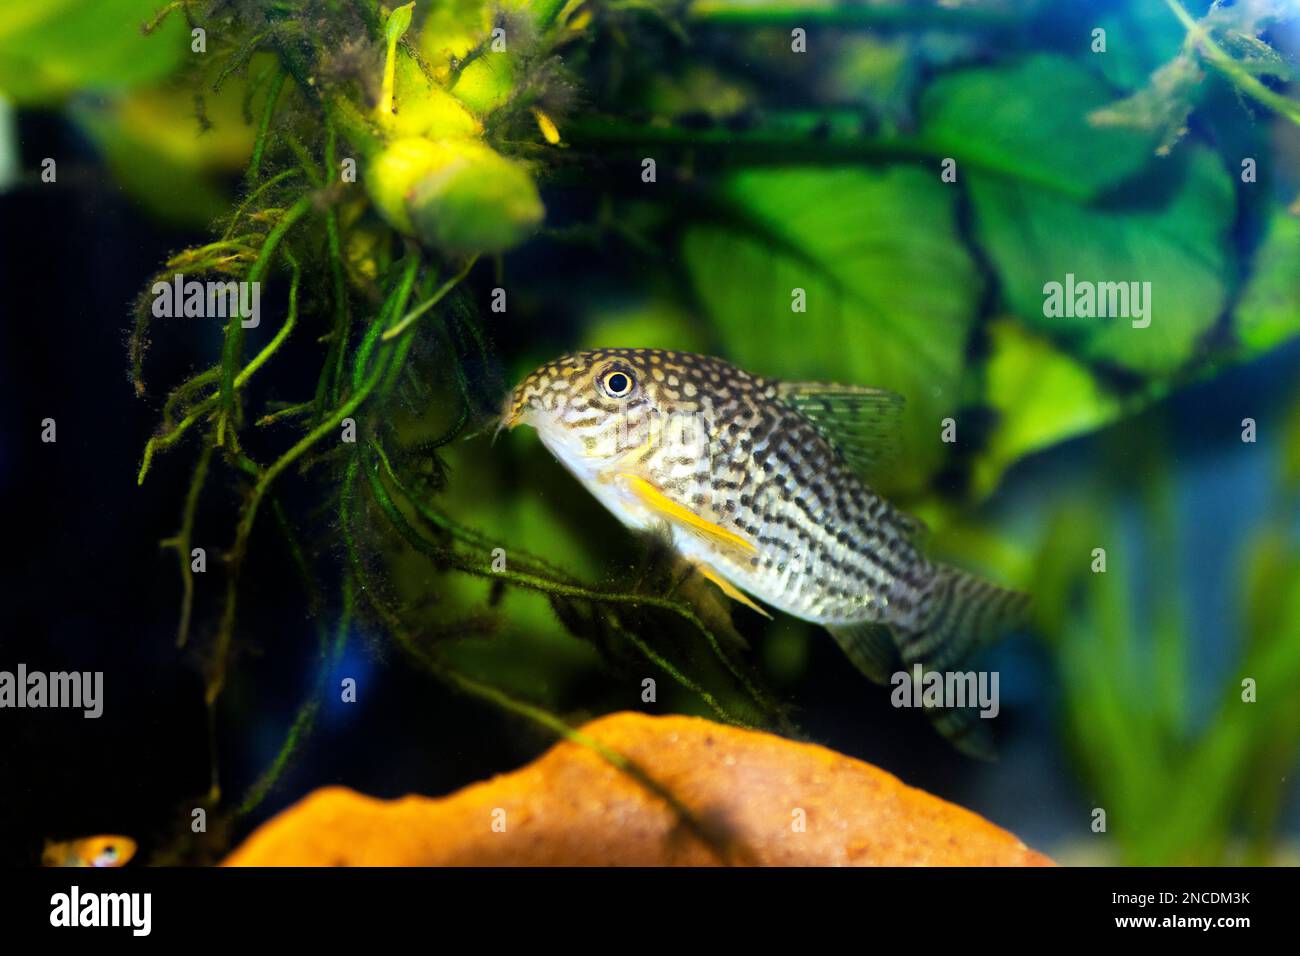 Il Corydoras haraldschultzi è un pesce di acqua dolce tropicale appartenente alle Corydoradinae. Foto Stock